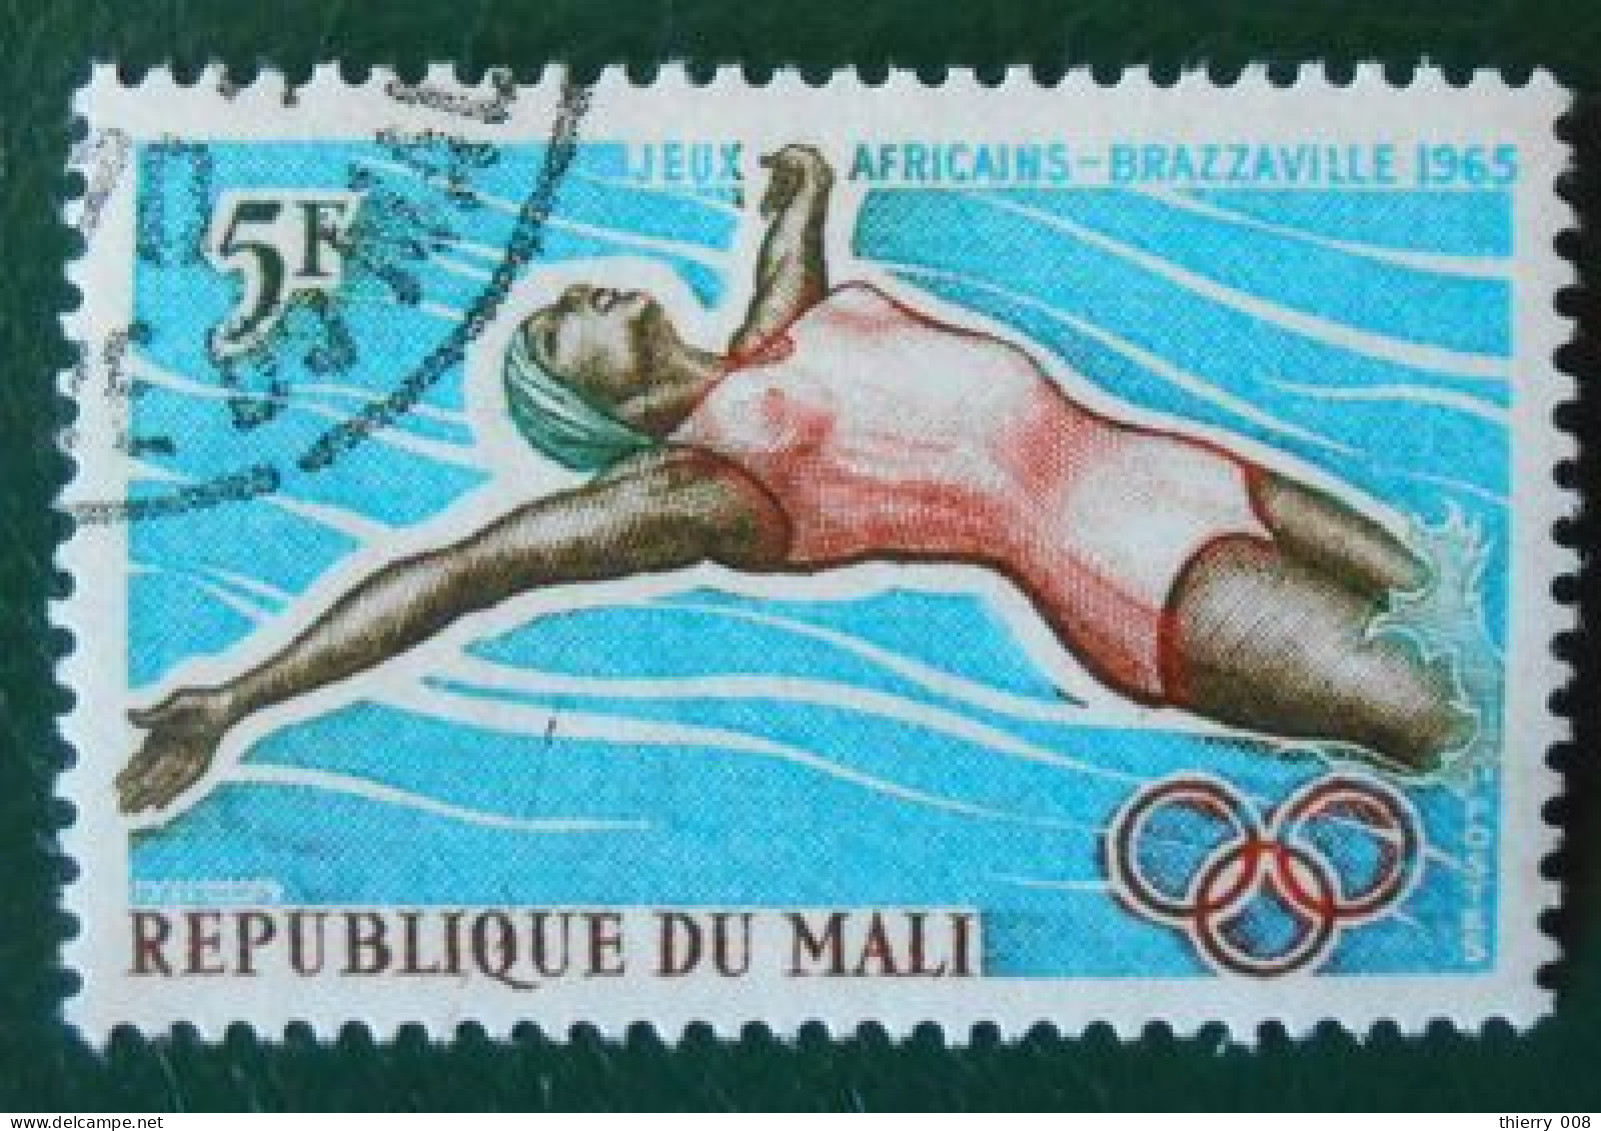 04 République Du Mali Jeux Africains Brazzaville 1965 Natation - Schwimmen